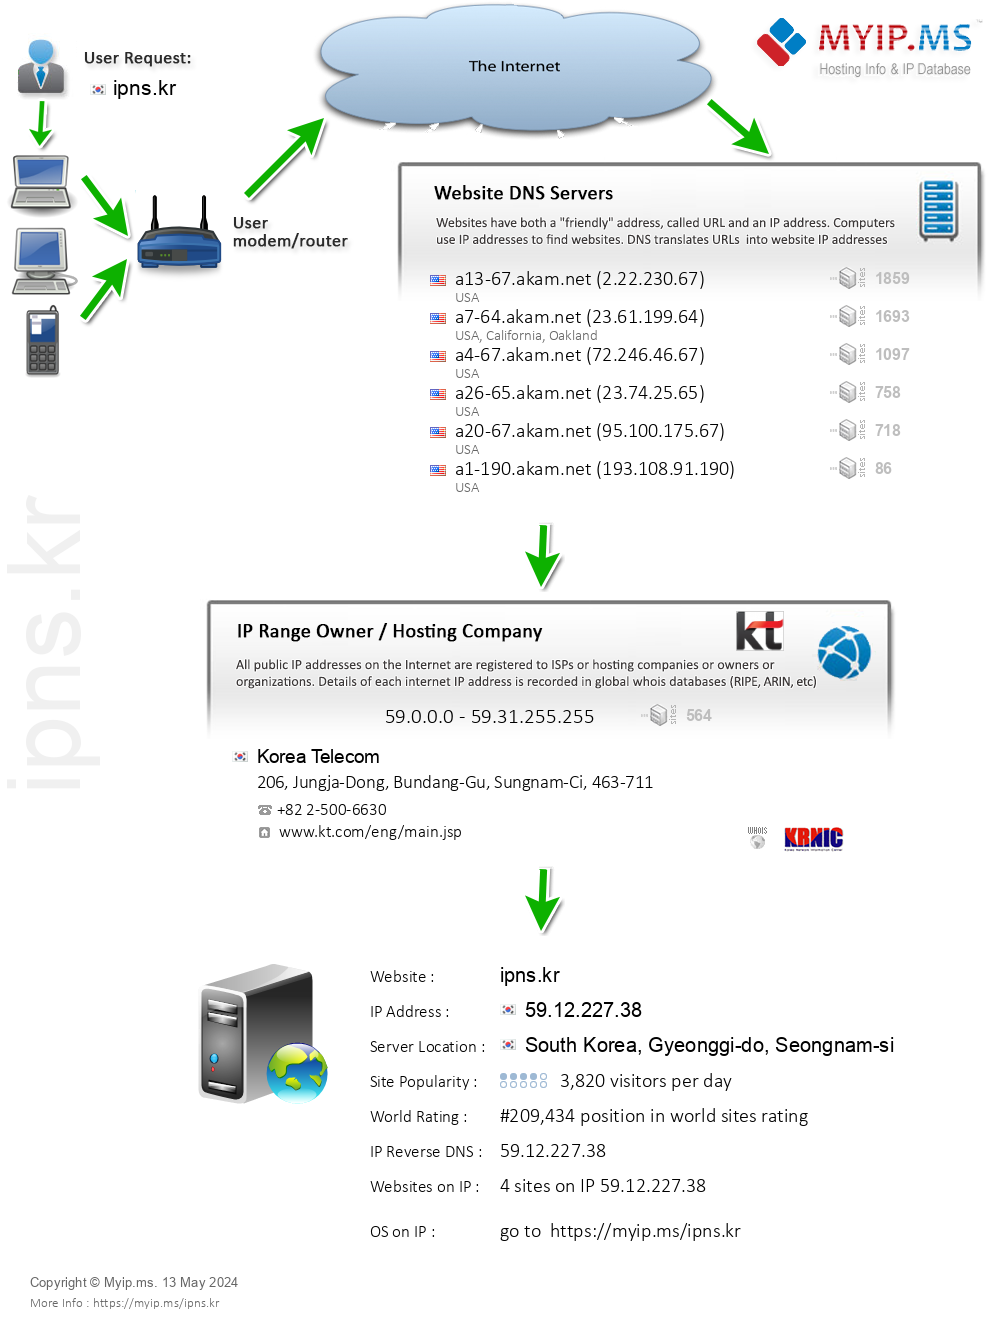 Ipns.kr - Website Hosting Visual IP Diagram